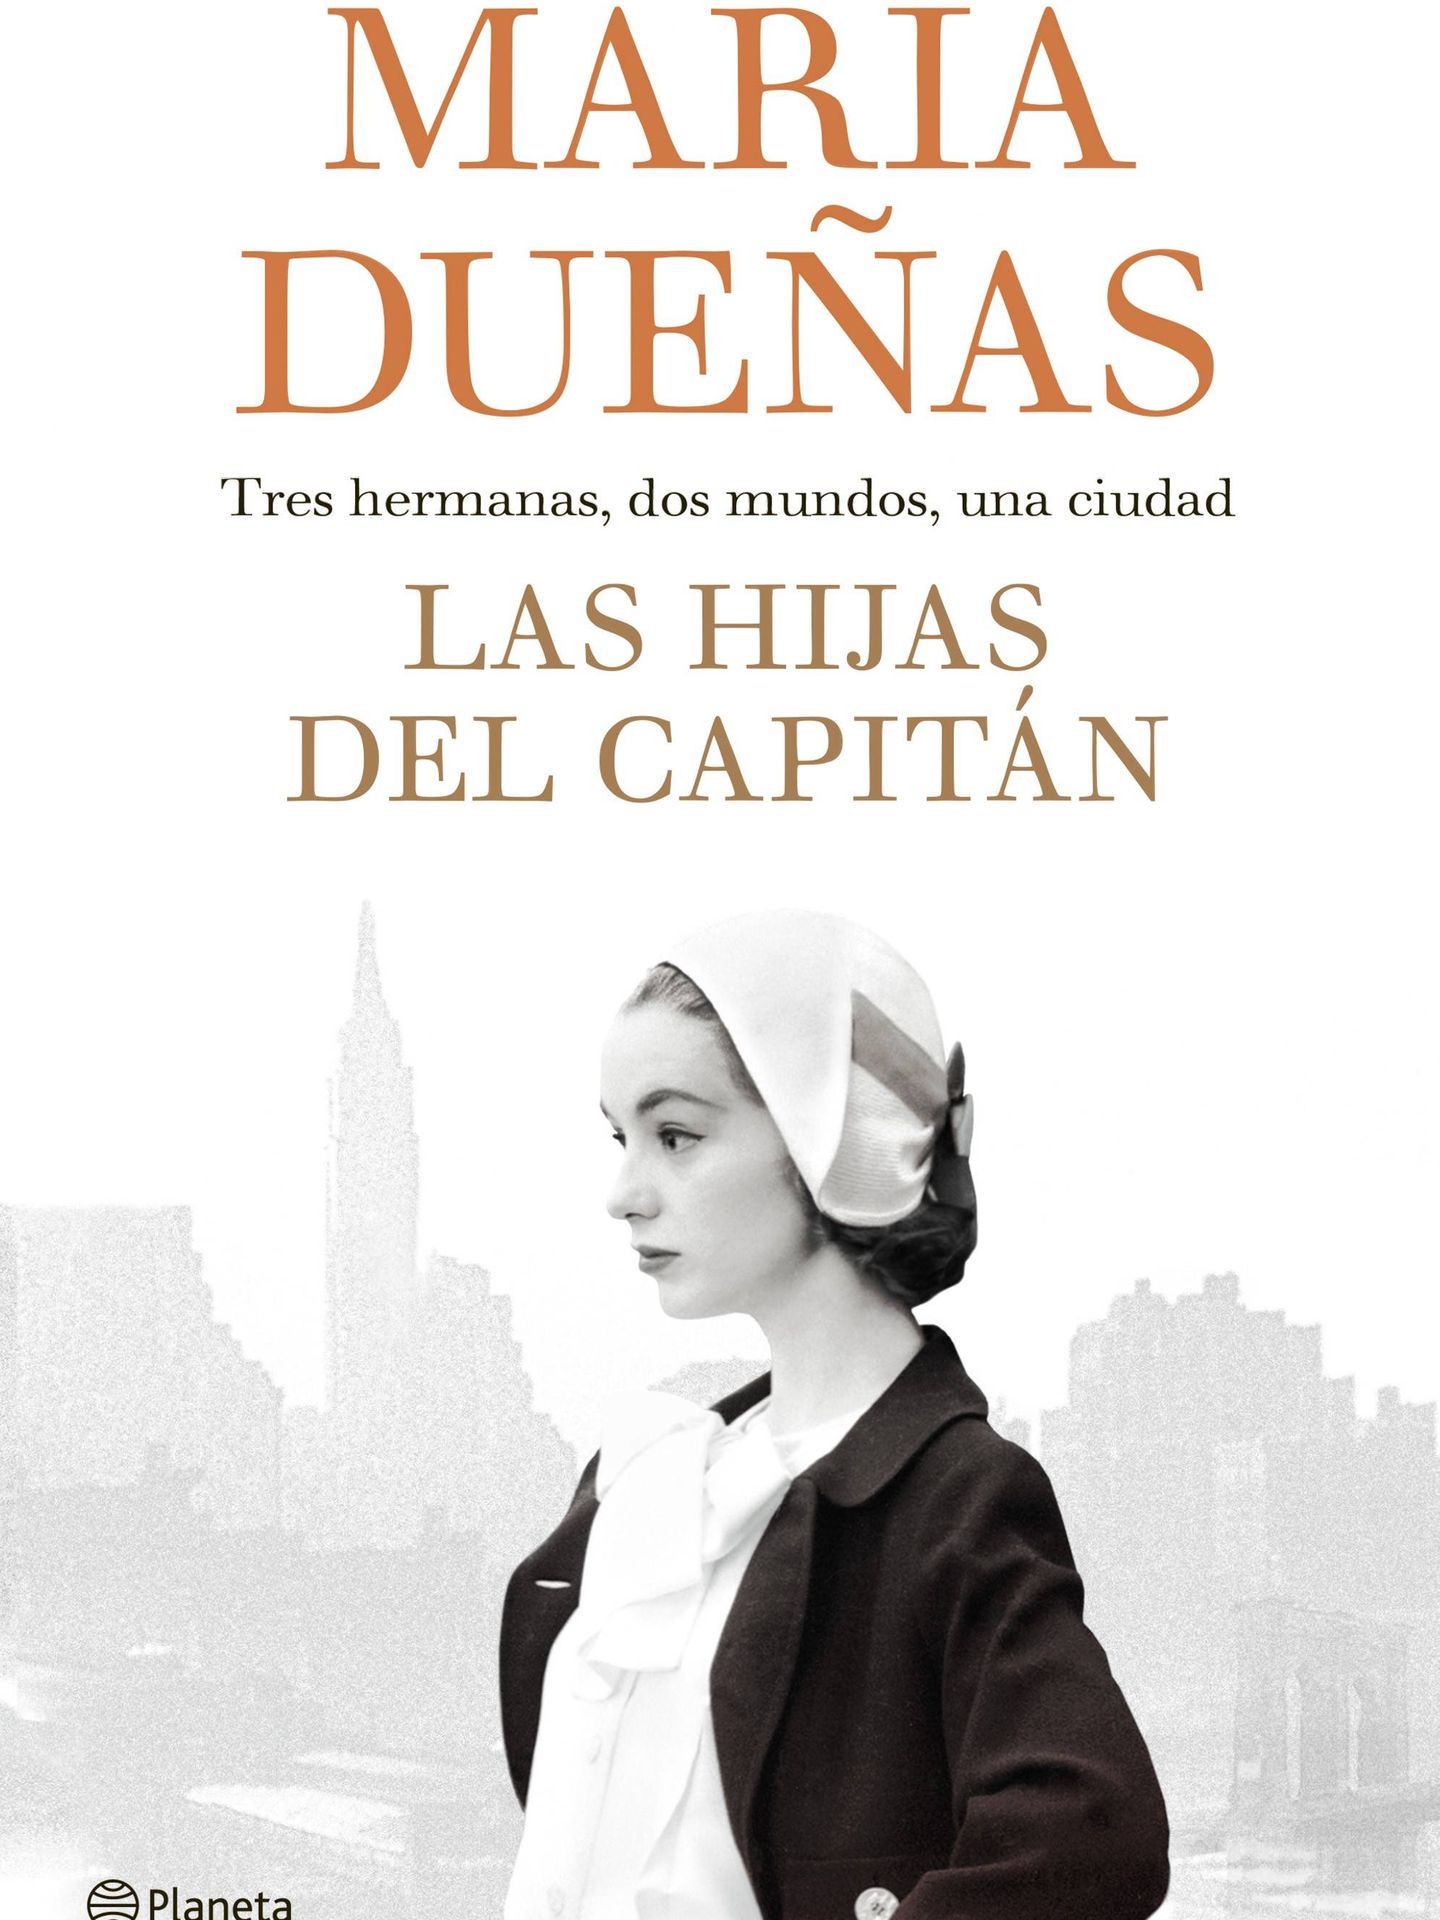 María Dueñas - 'Las hijas del capitán'